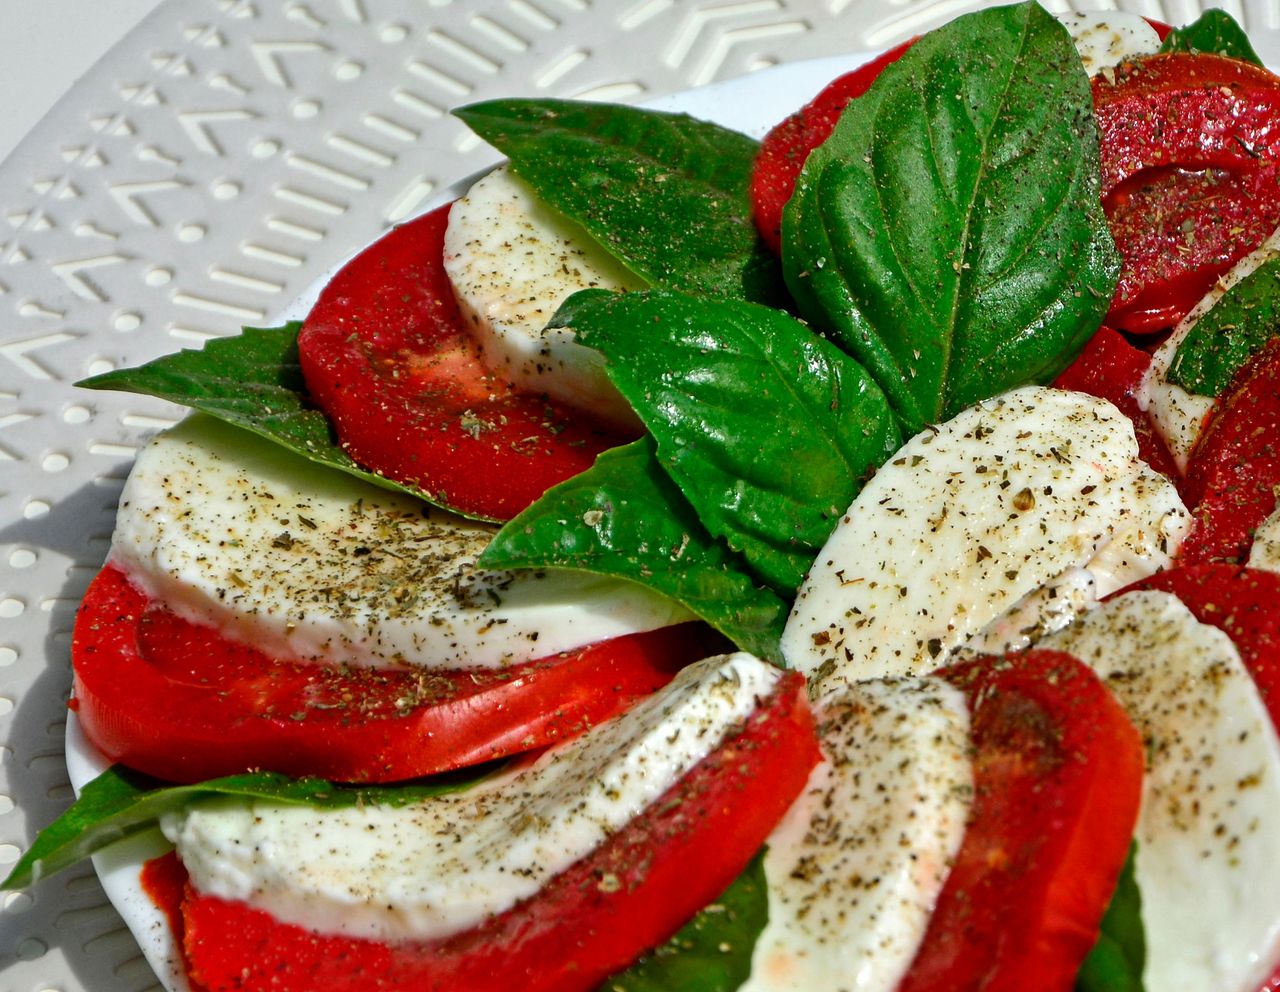 Reimagining the classic strawberry caprese salad recipe